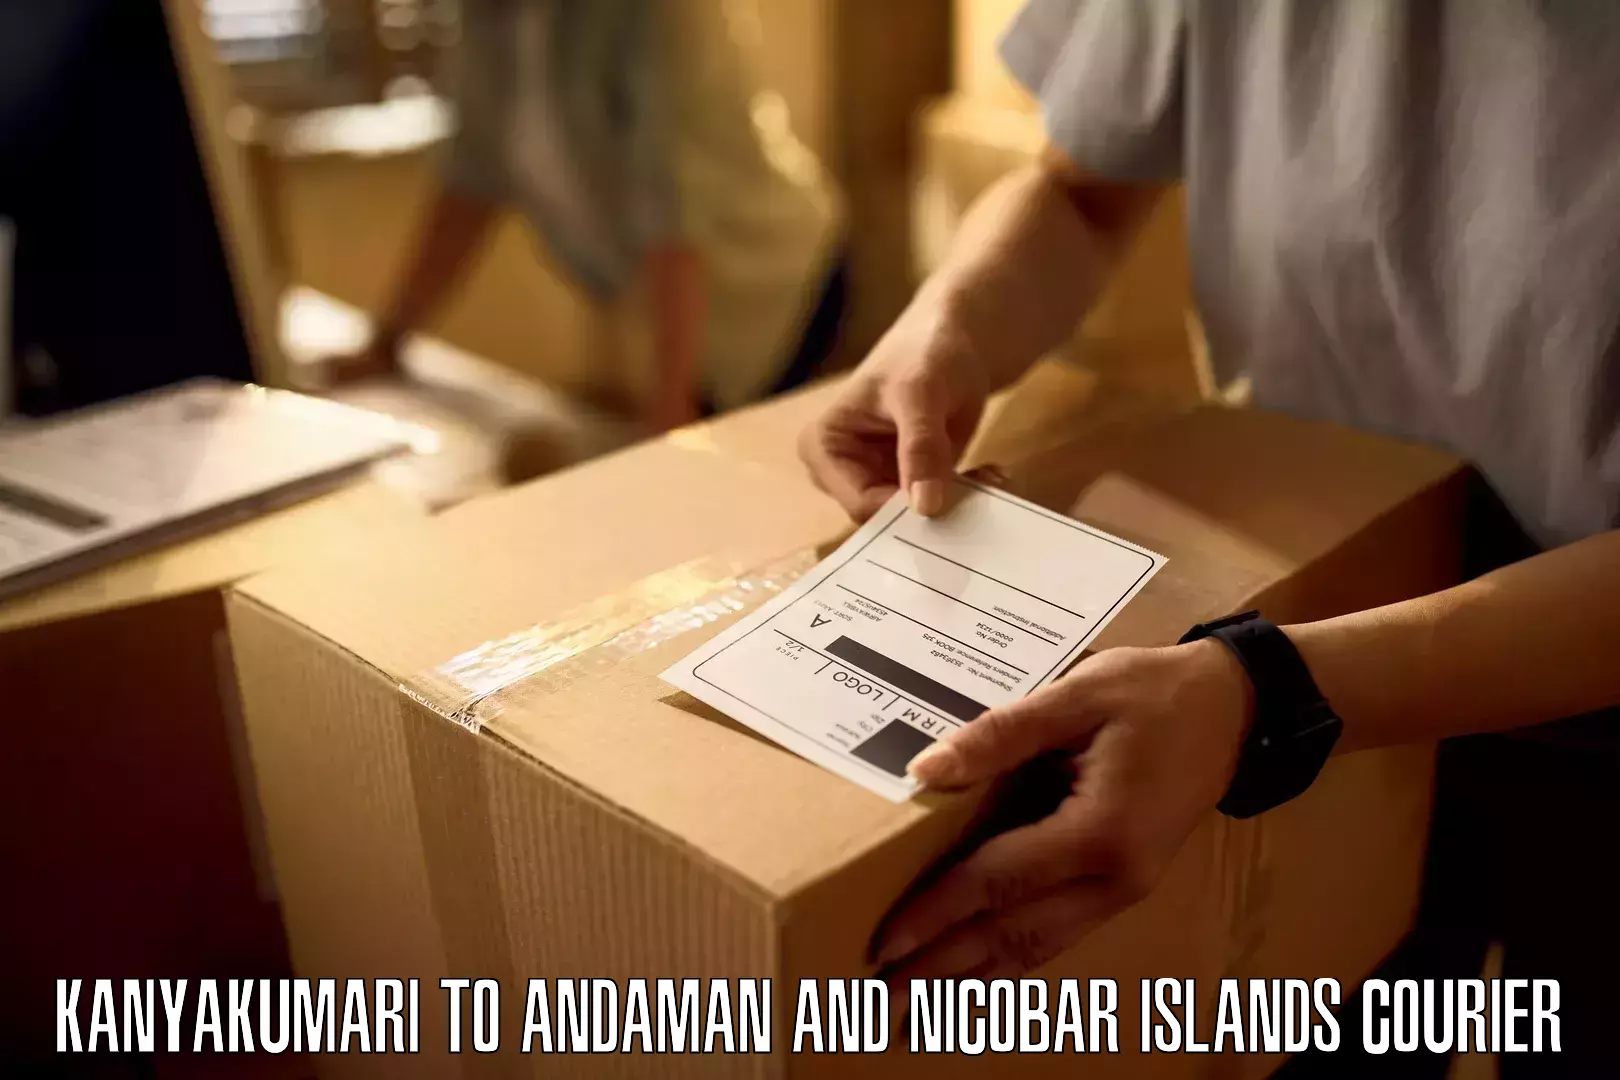 Fast-track shipping solutions Kanyakumari to Andaman and Nicobar Islands